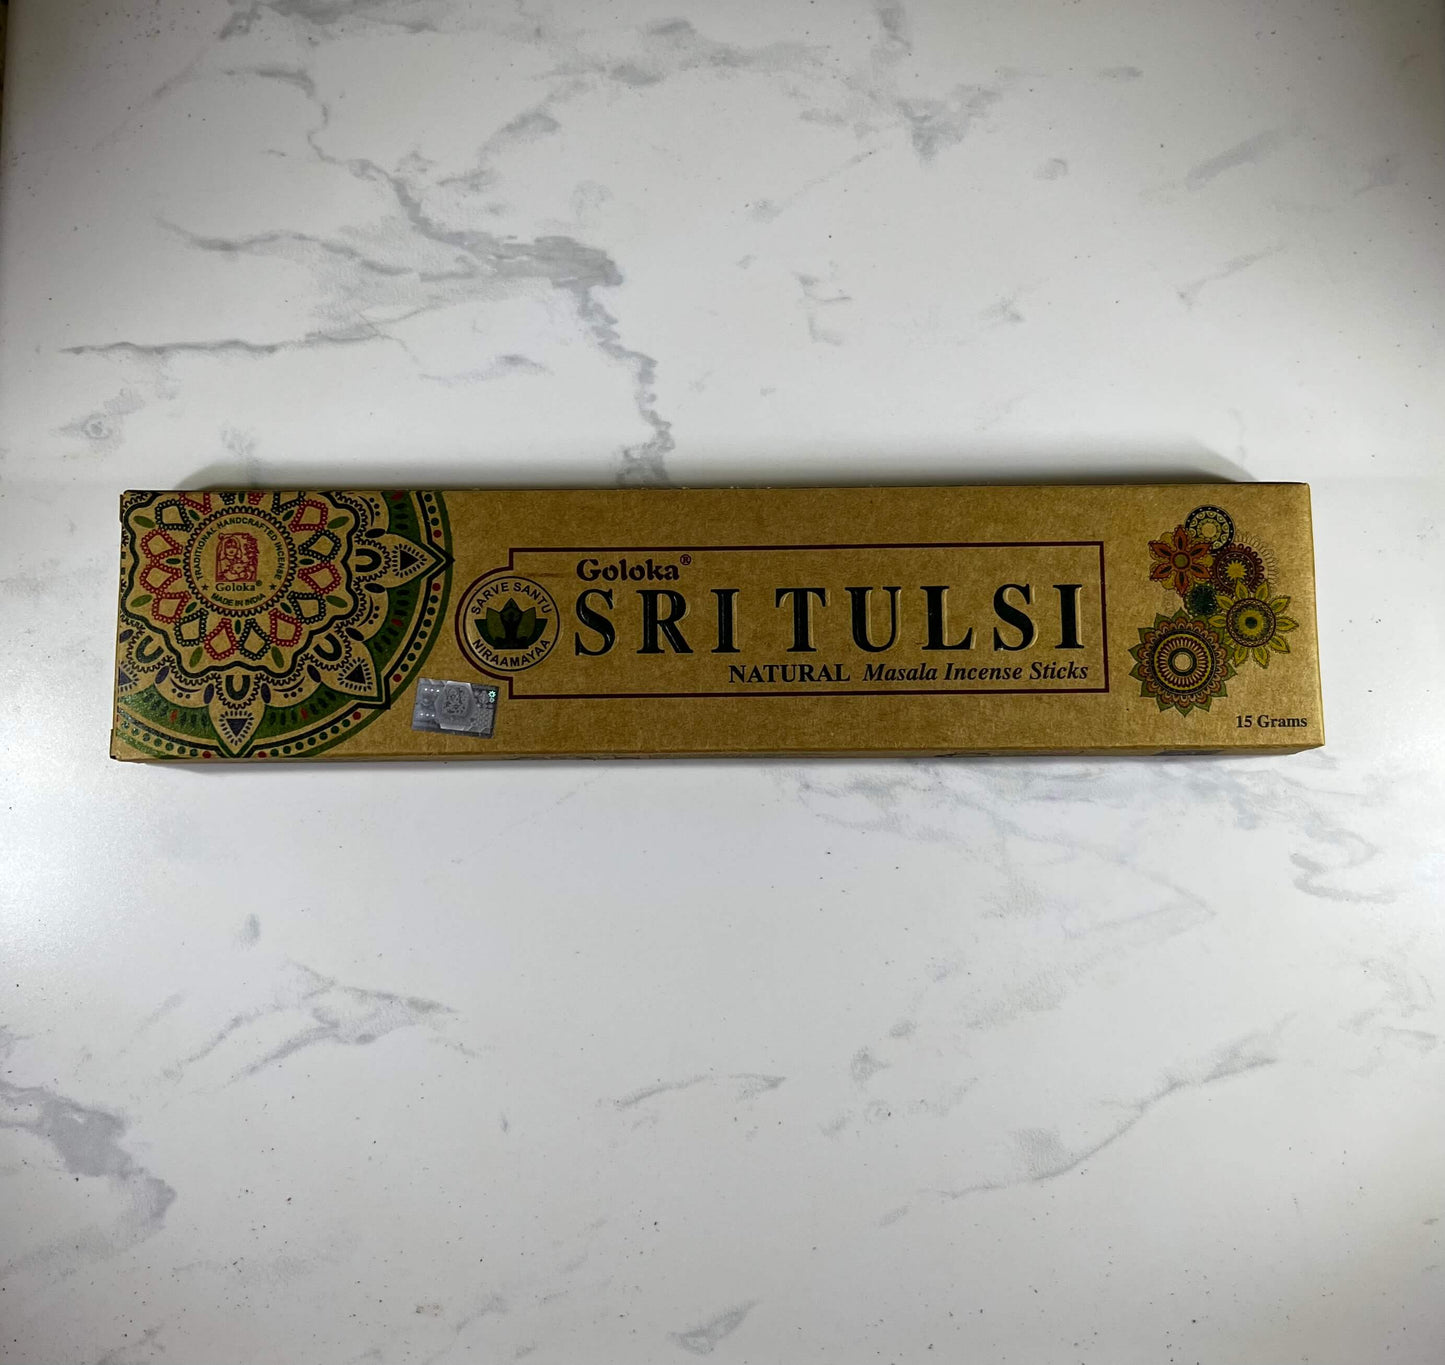 Goloka Organic Sri Tulsi (Holy Basil) incense